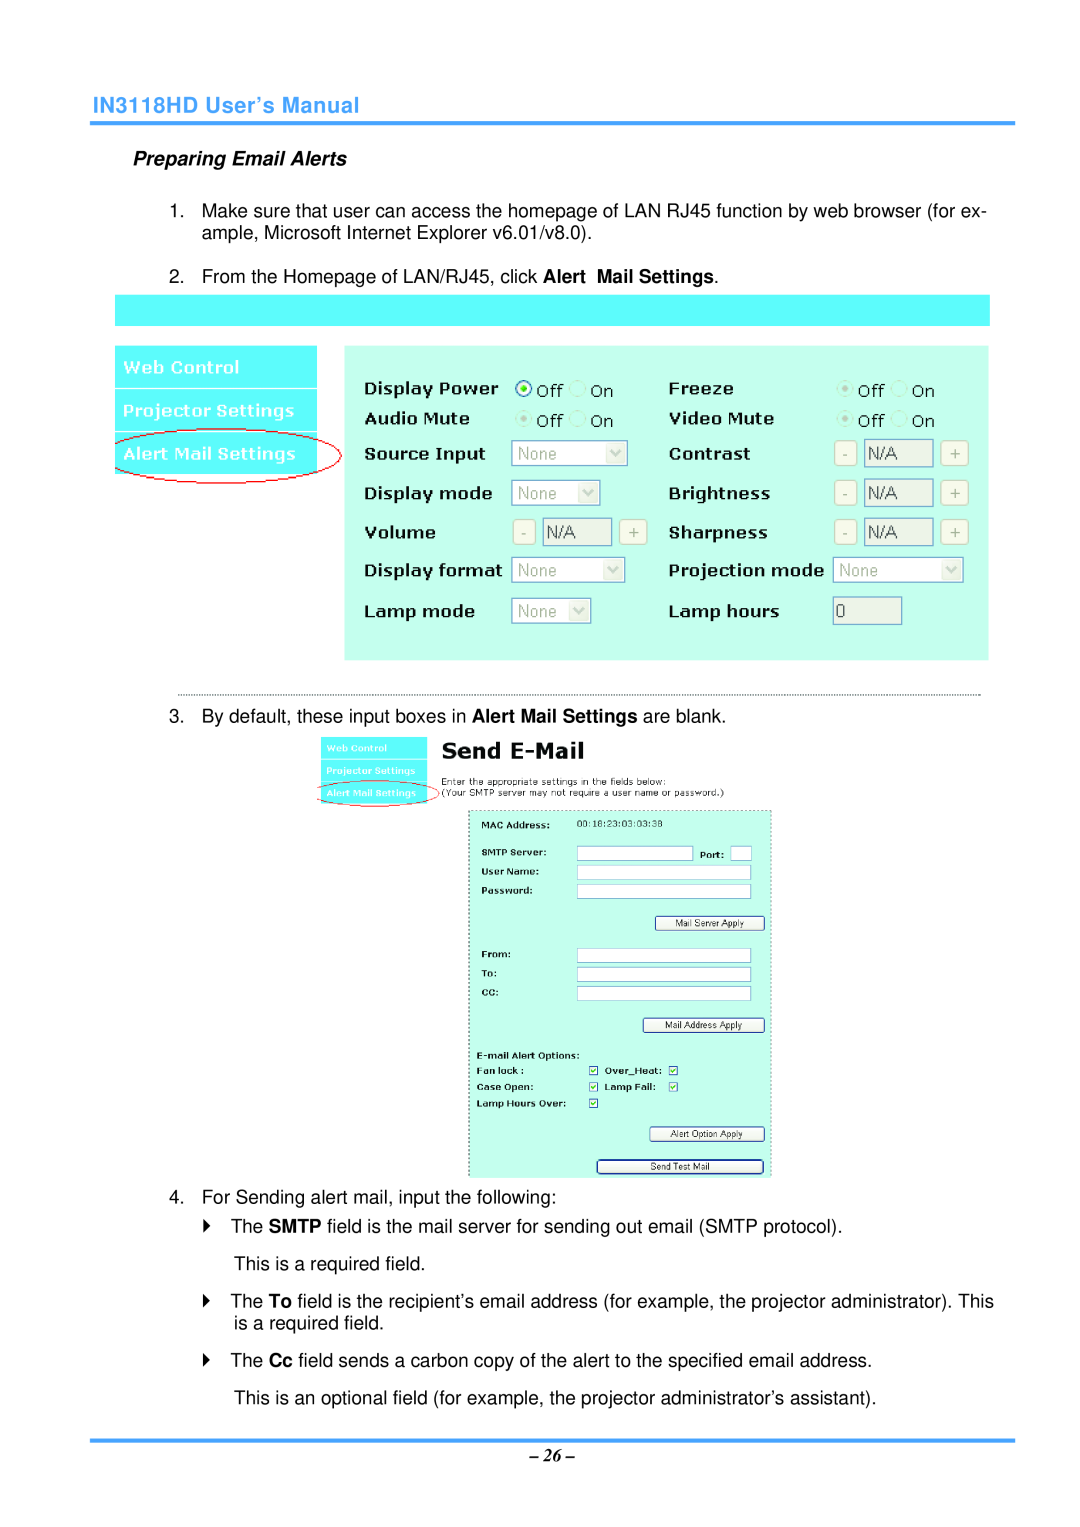 InFocus manual Preparing Email Alerts, IN3118HD User’s Manual 